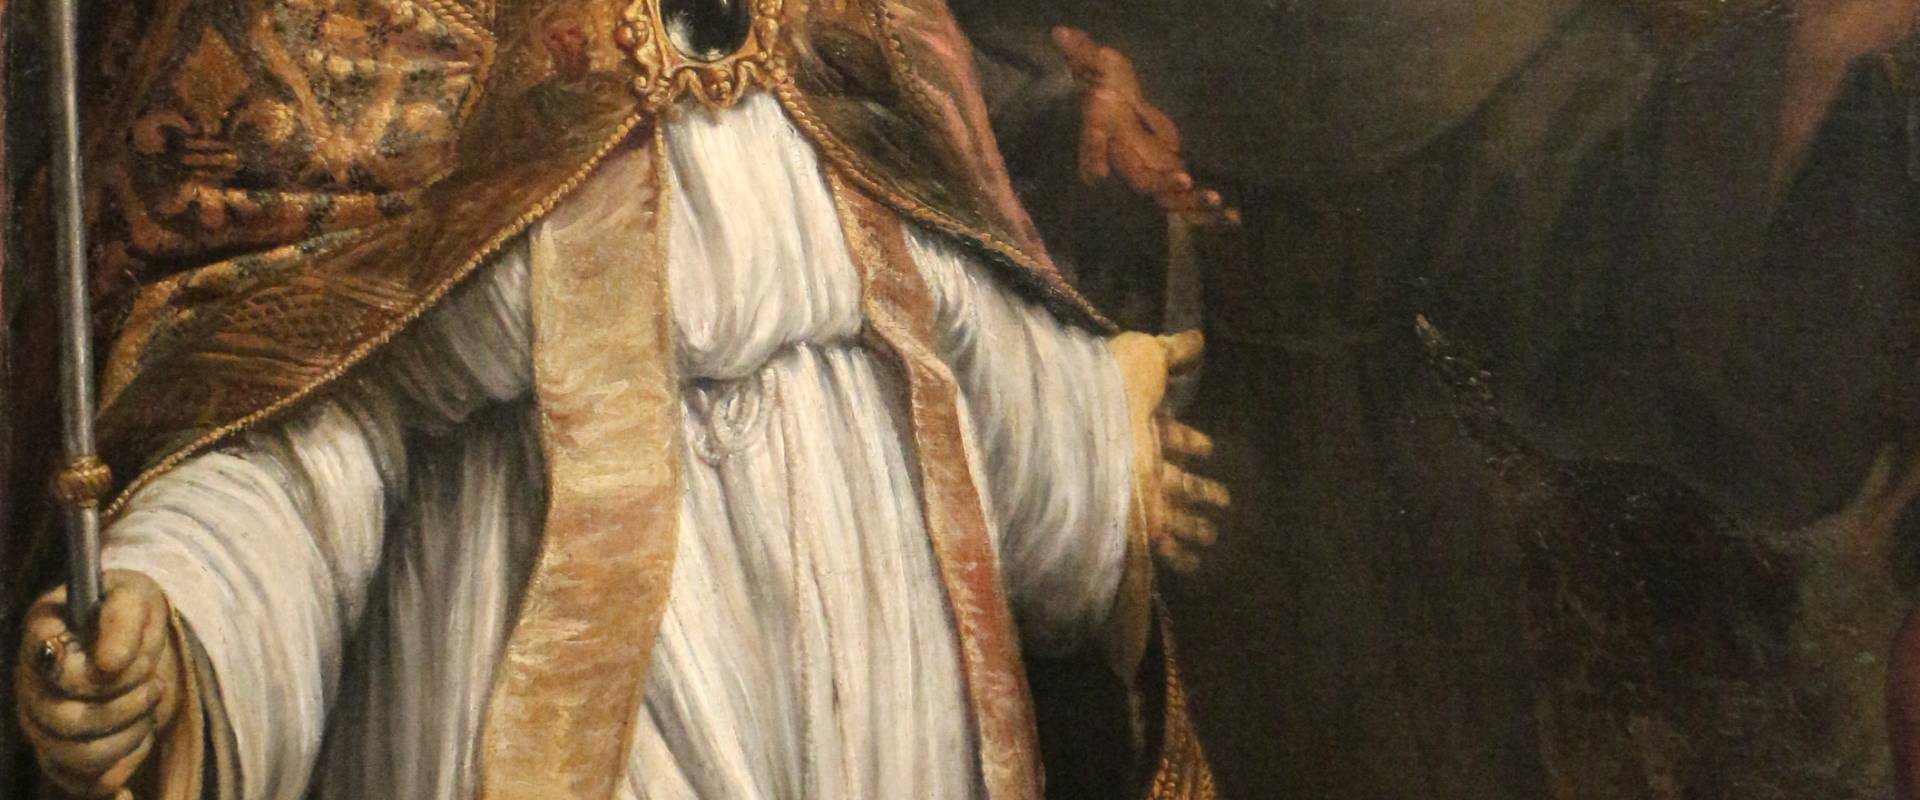 Annibale carracci, madonna in gloria e santi, 1590-92 ca., dai ss. ludovico e alessio, 03 foto di Sailko